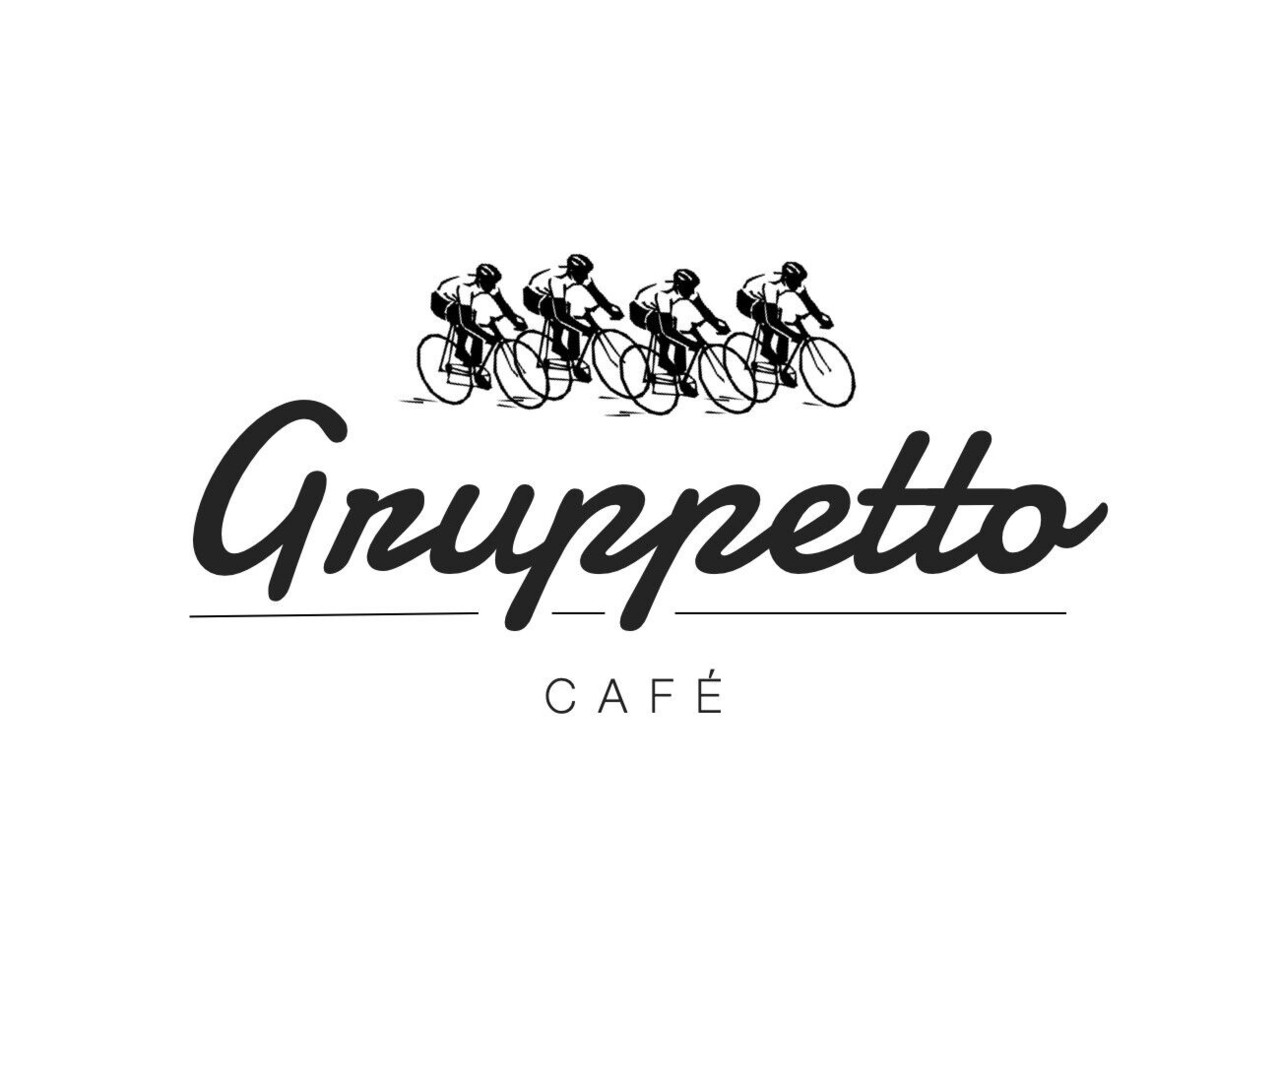 Gruppetto Café